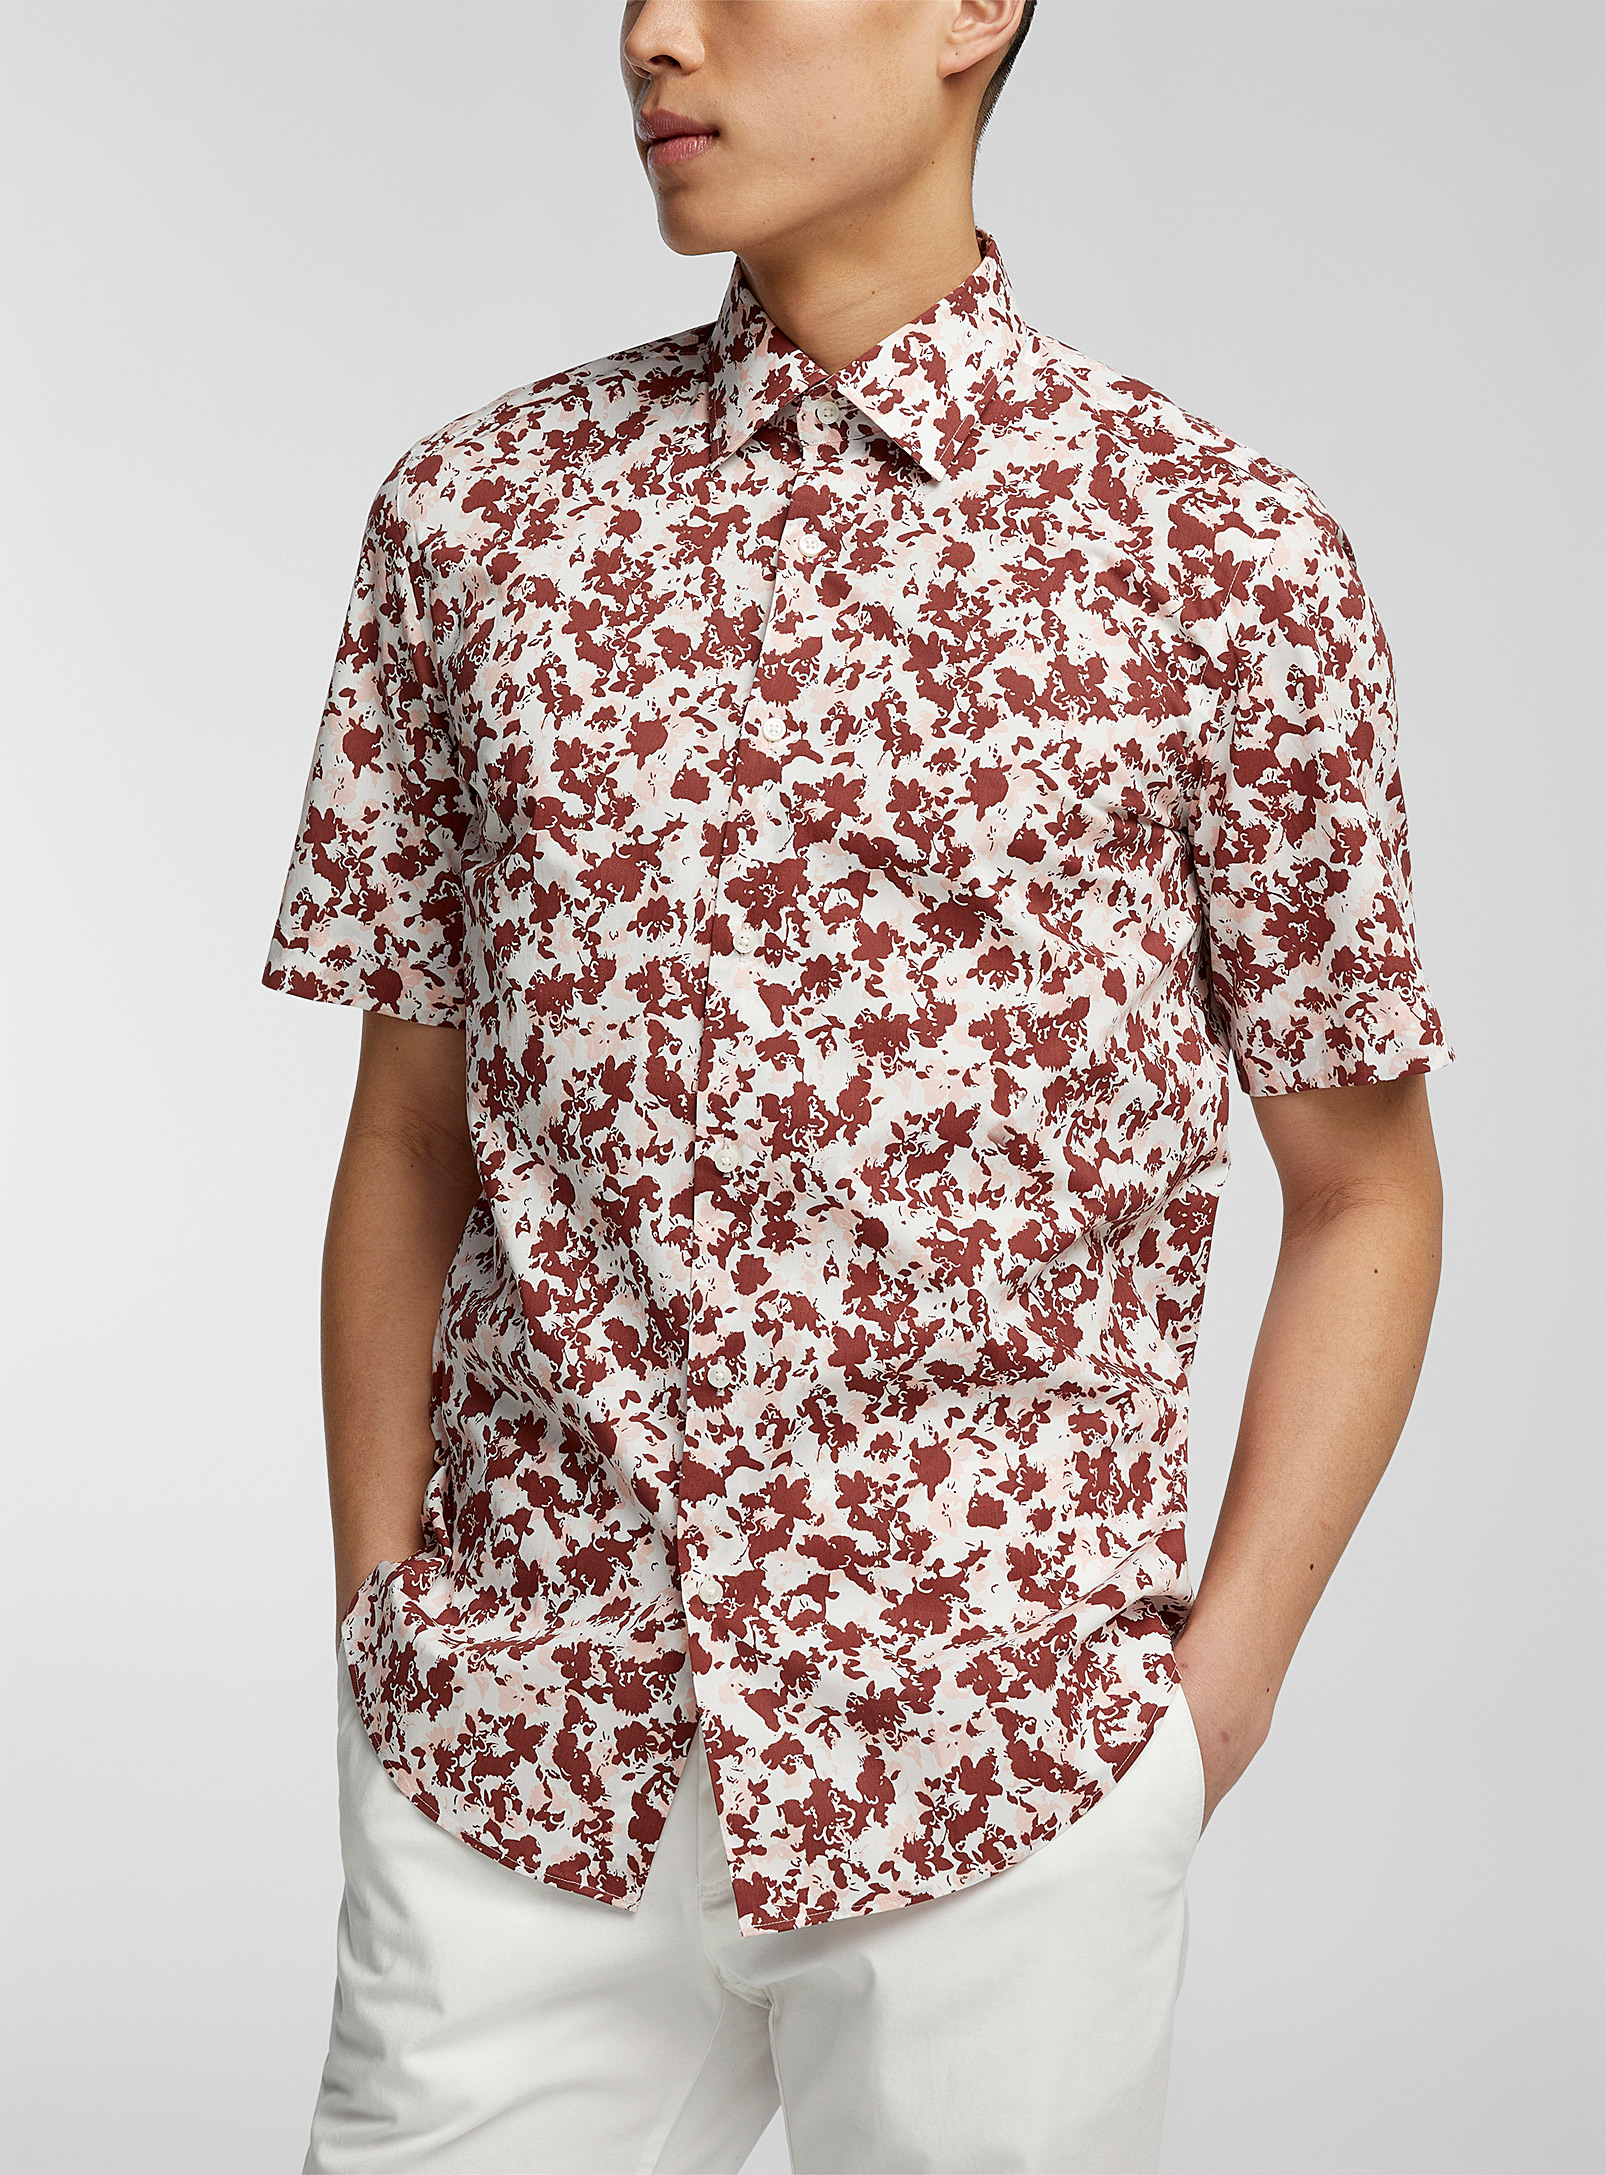 BOSS - Men's Short-sleeve floral shirt